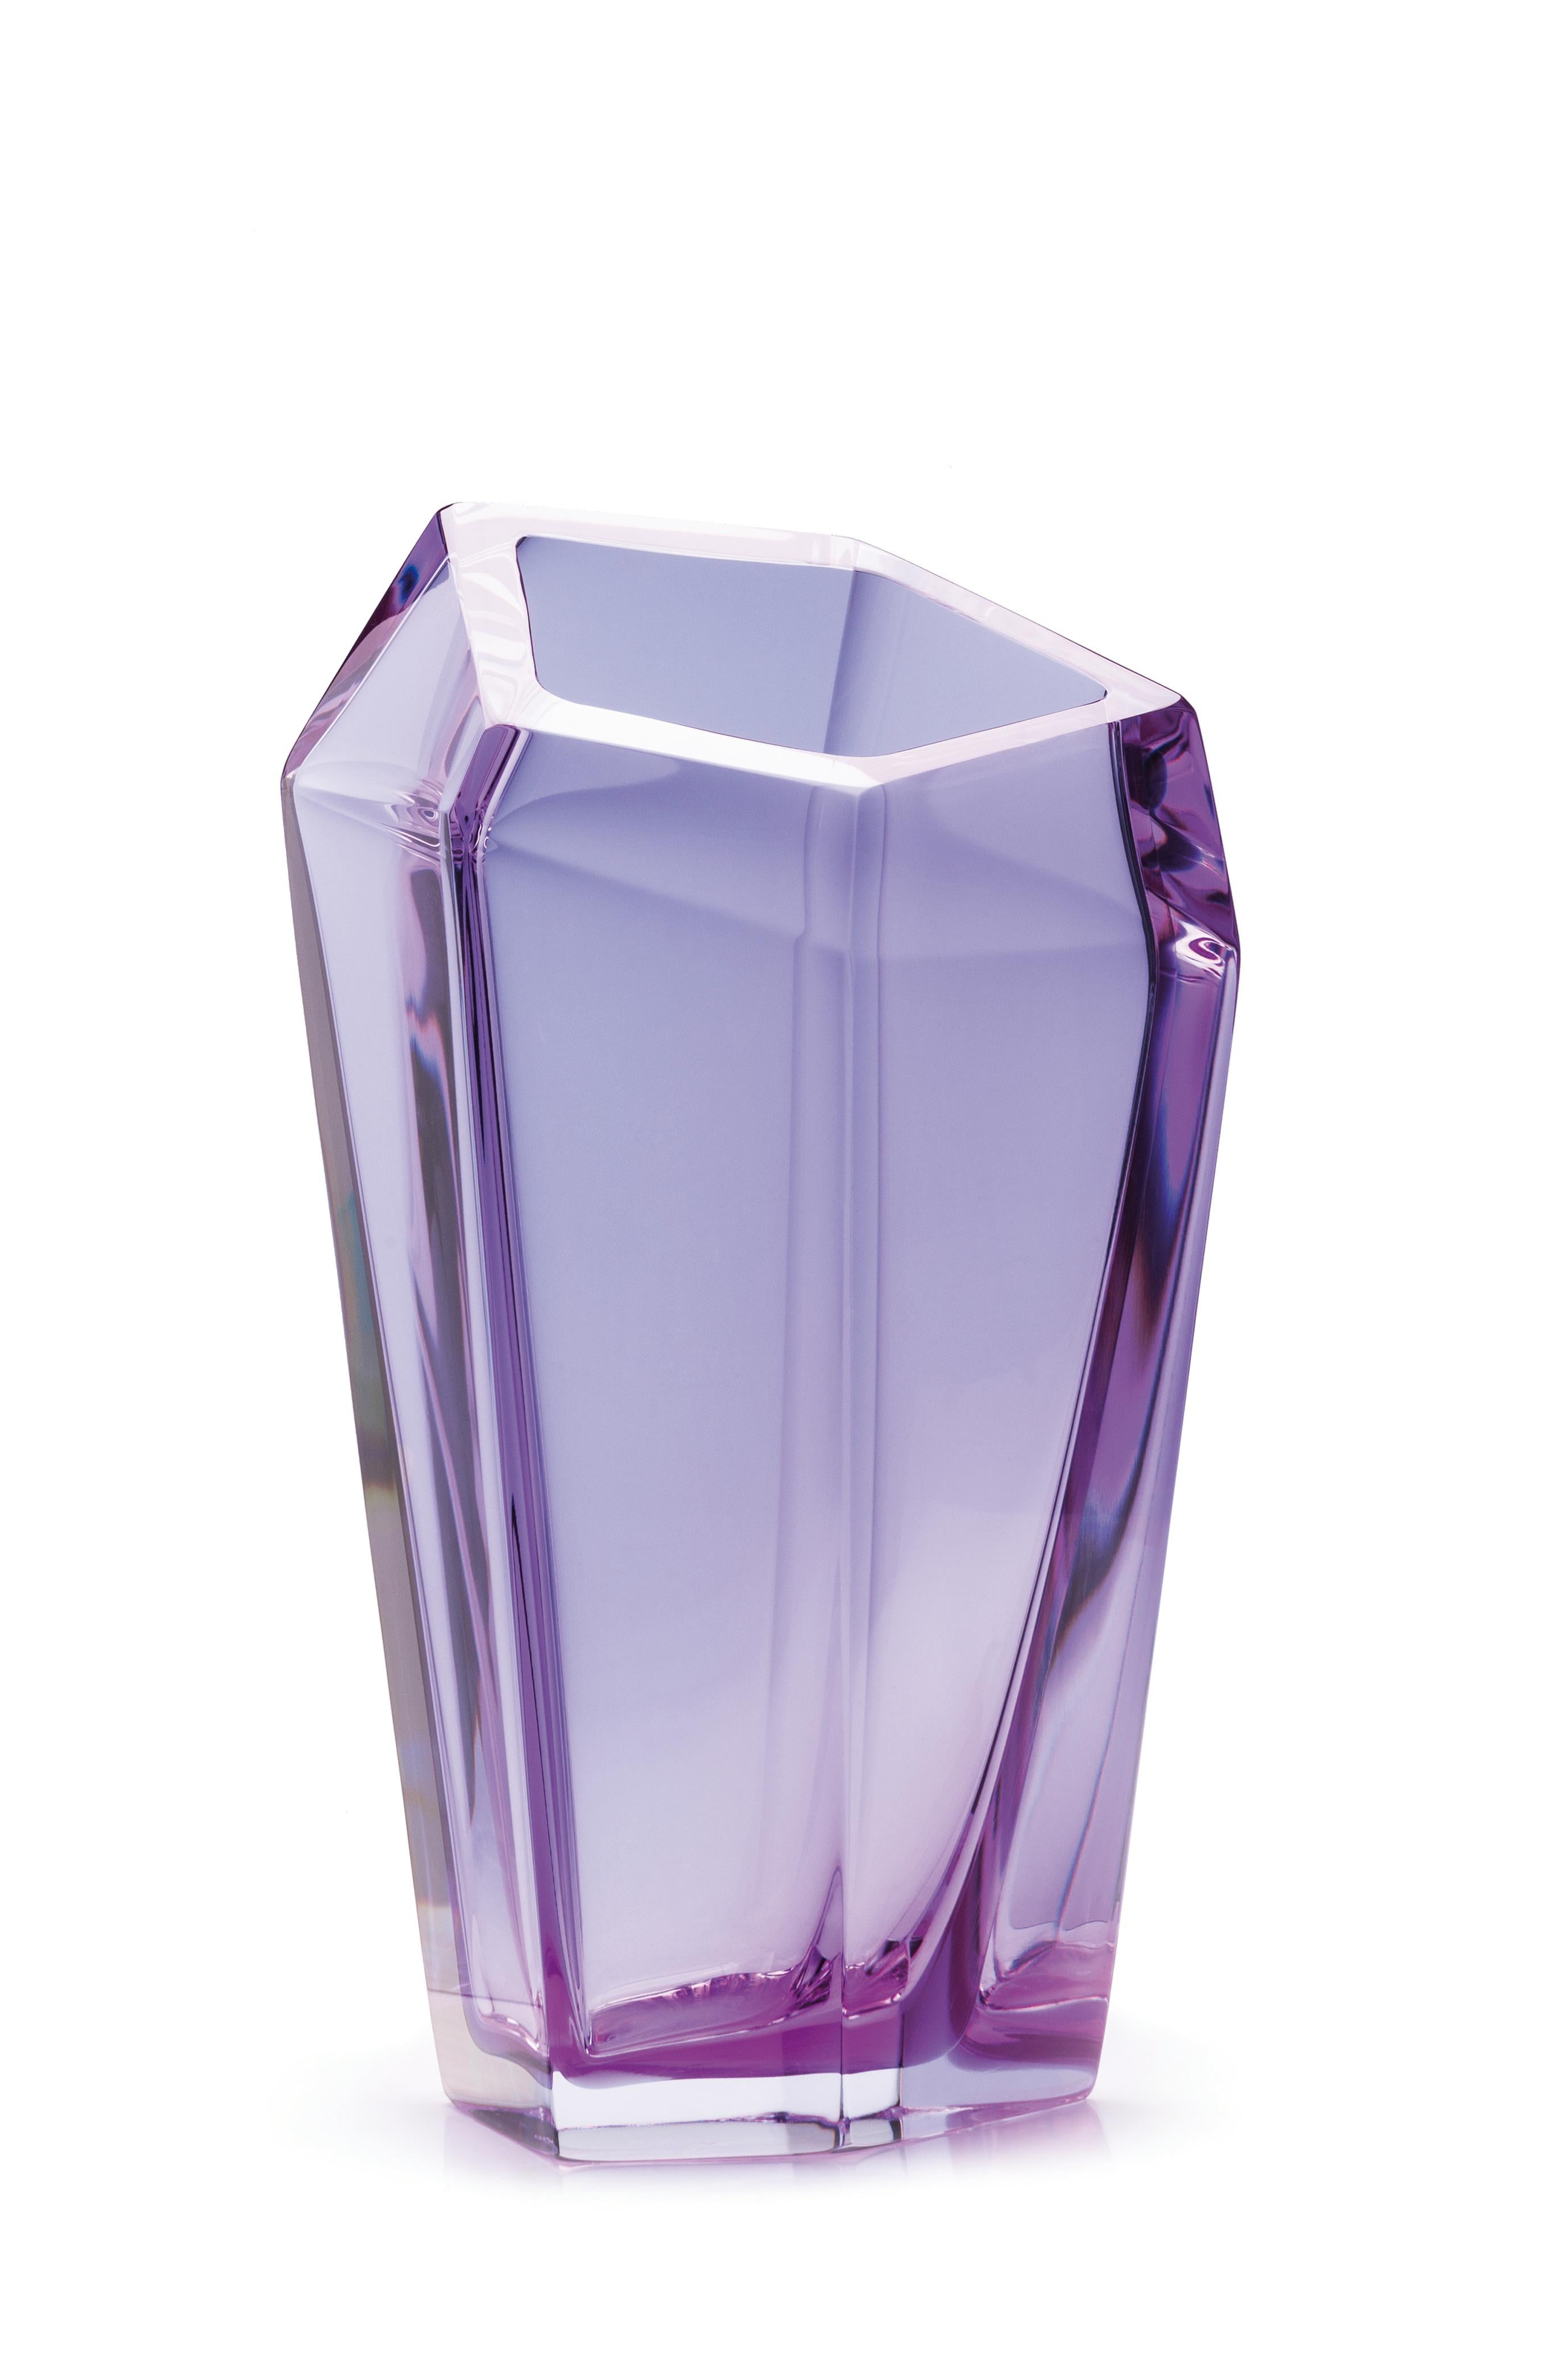 Kastle Violett Große Vase von Purho
Abmessungen: T20 x H47cm
MATERIALIEN: Glas
Andere Farben und Abmessungen sind erhältlich.

Purho ist ein neuer Protagonist des Made-in-Italy-Designs, ein Werk der Synthese, eine jahrelange Forschung, eine